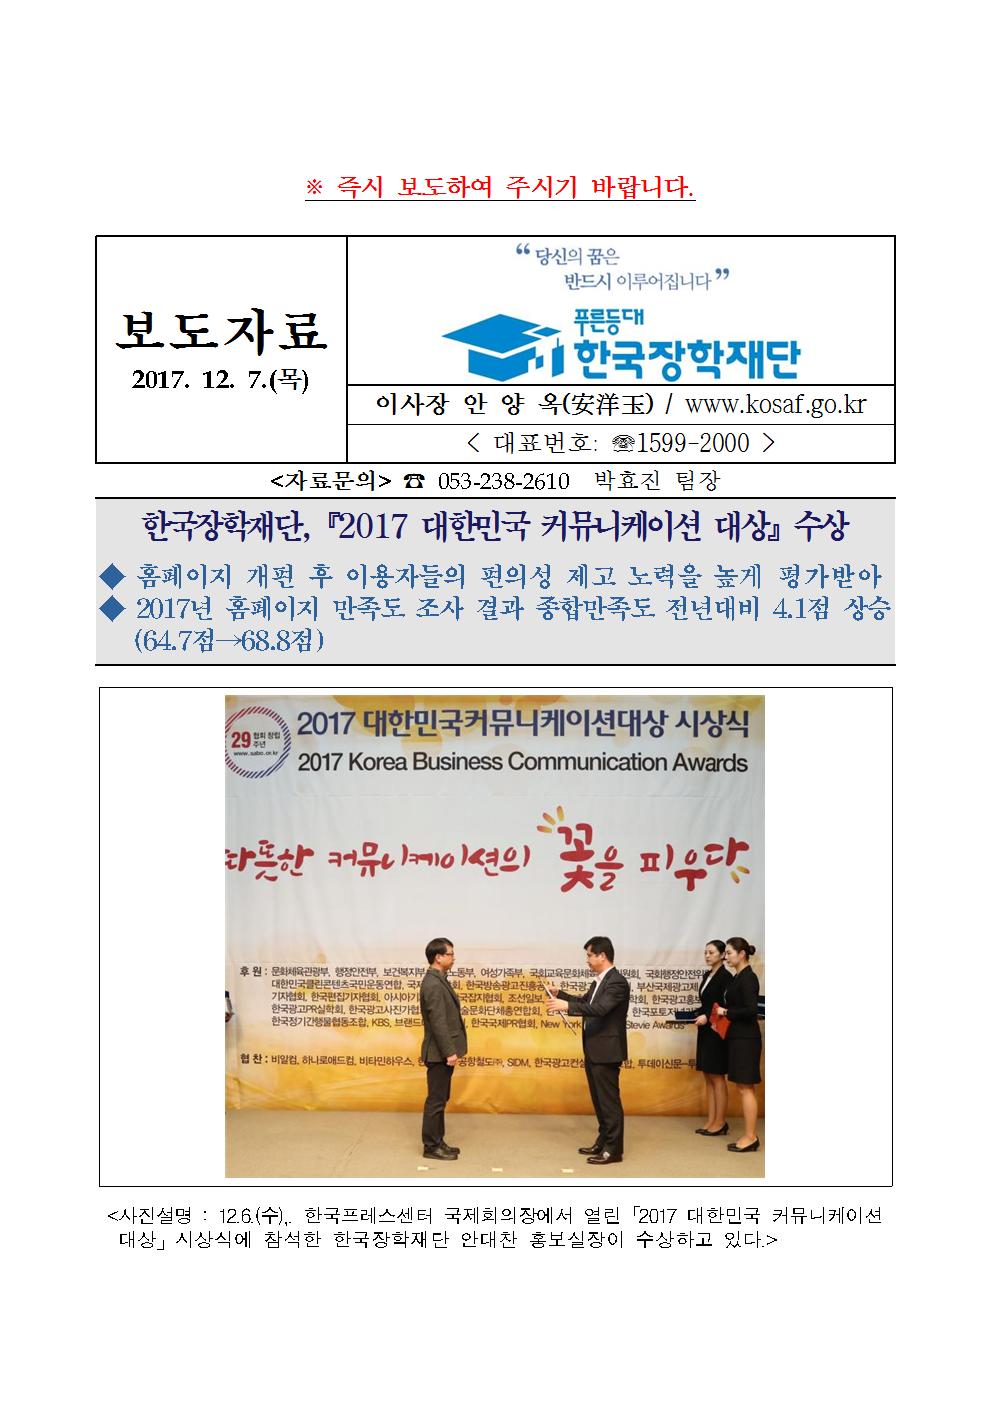 12-07(목)[보도자료] 한국장학재단, 2017년 대한민국 커뮤니케이션 대상 수상관련 이미지입니다. 자세한 내용은 아래를 참고하세요.